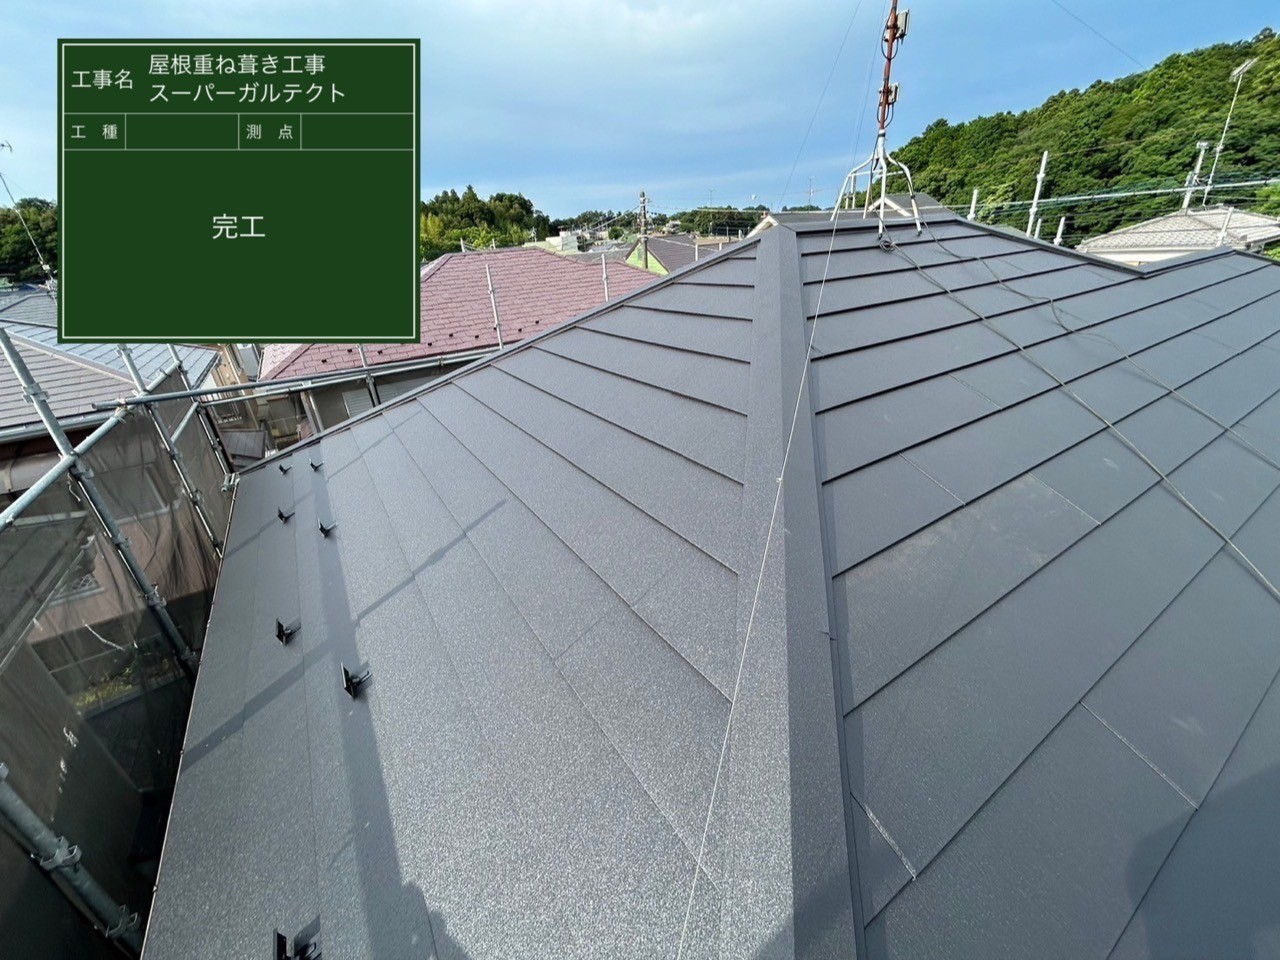 千葉県富里市にて屋根修理〈スーパーガルテクトへのカバー工法〉の施工後写真